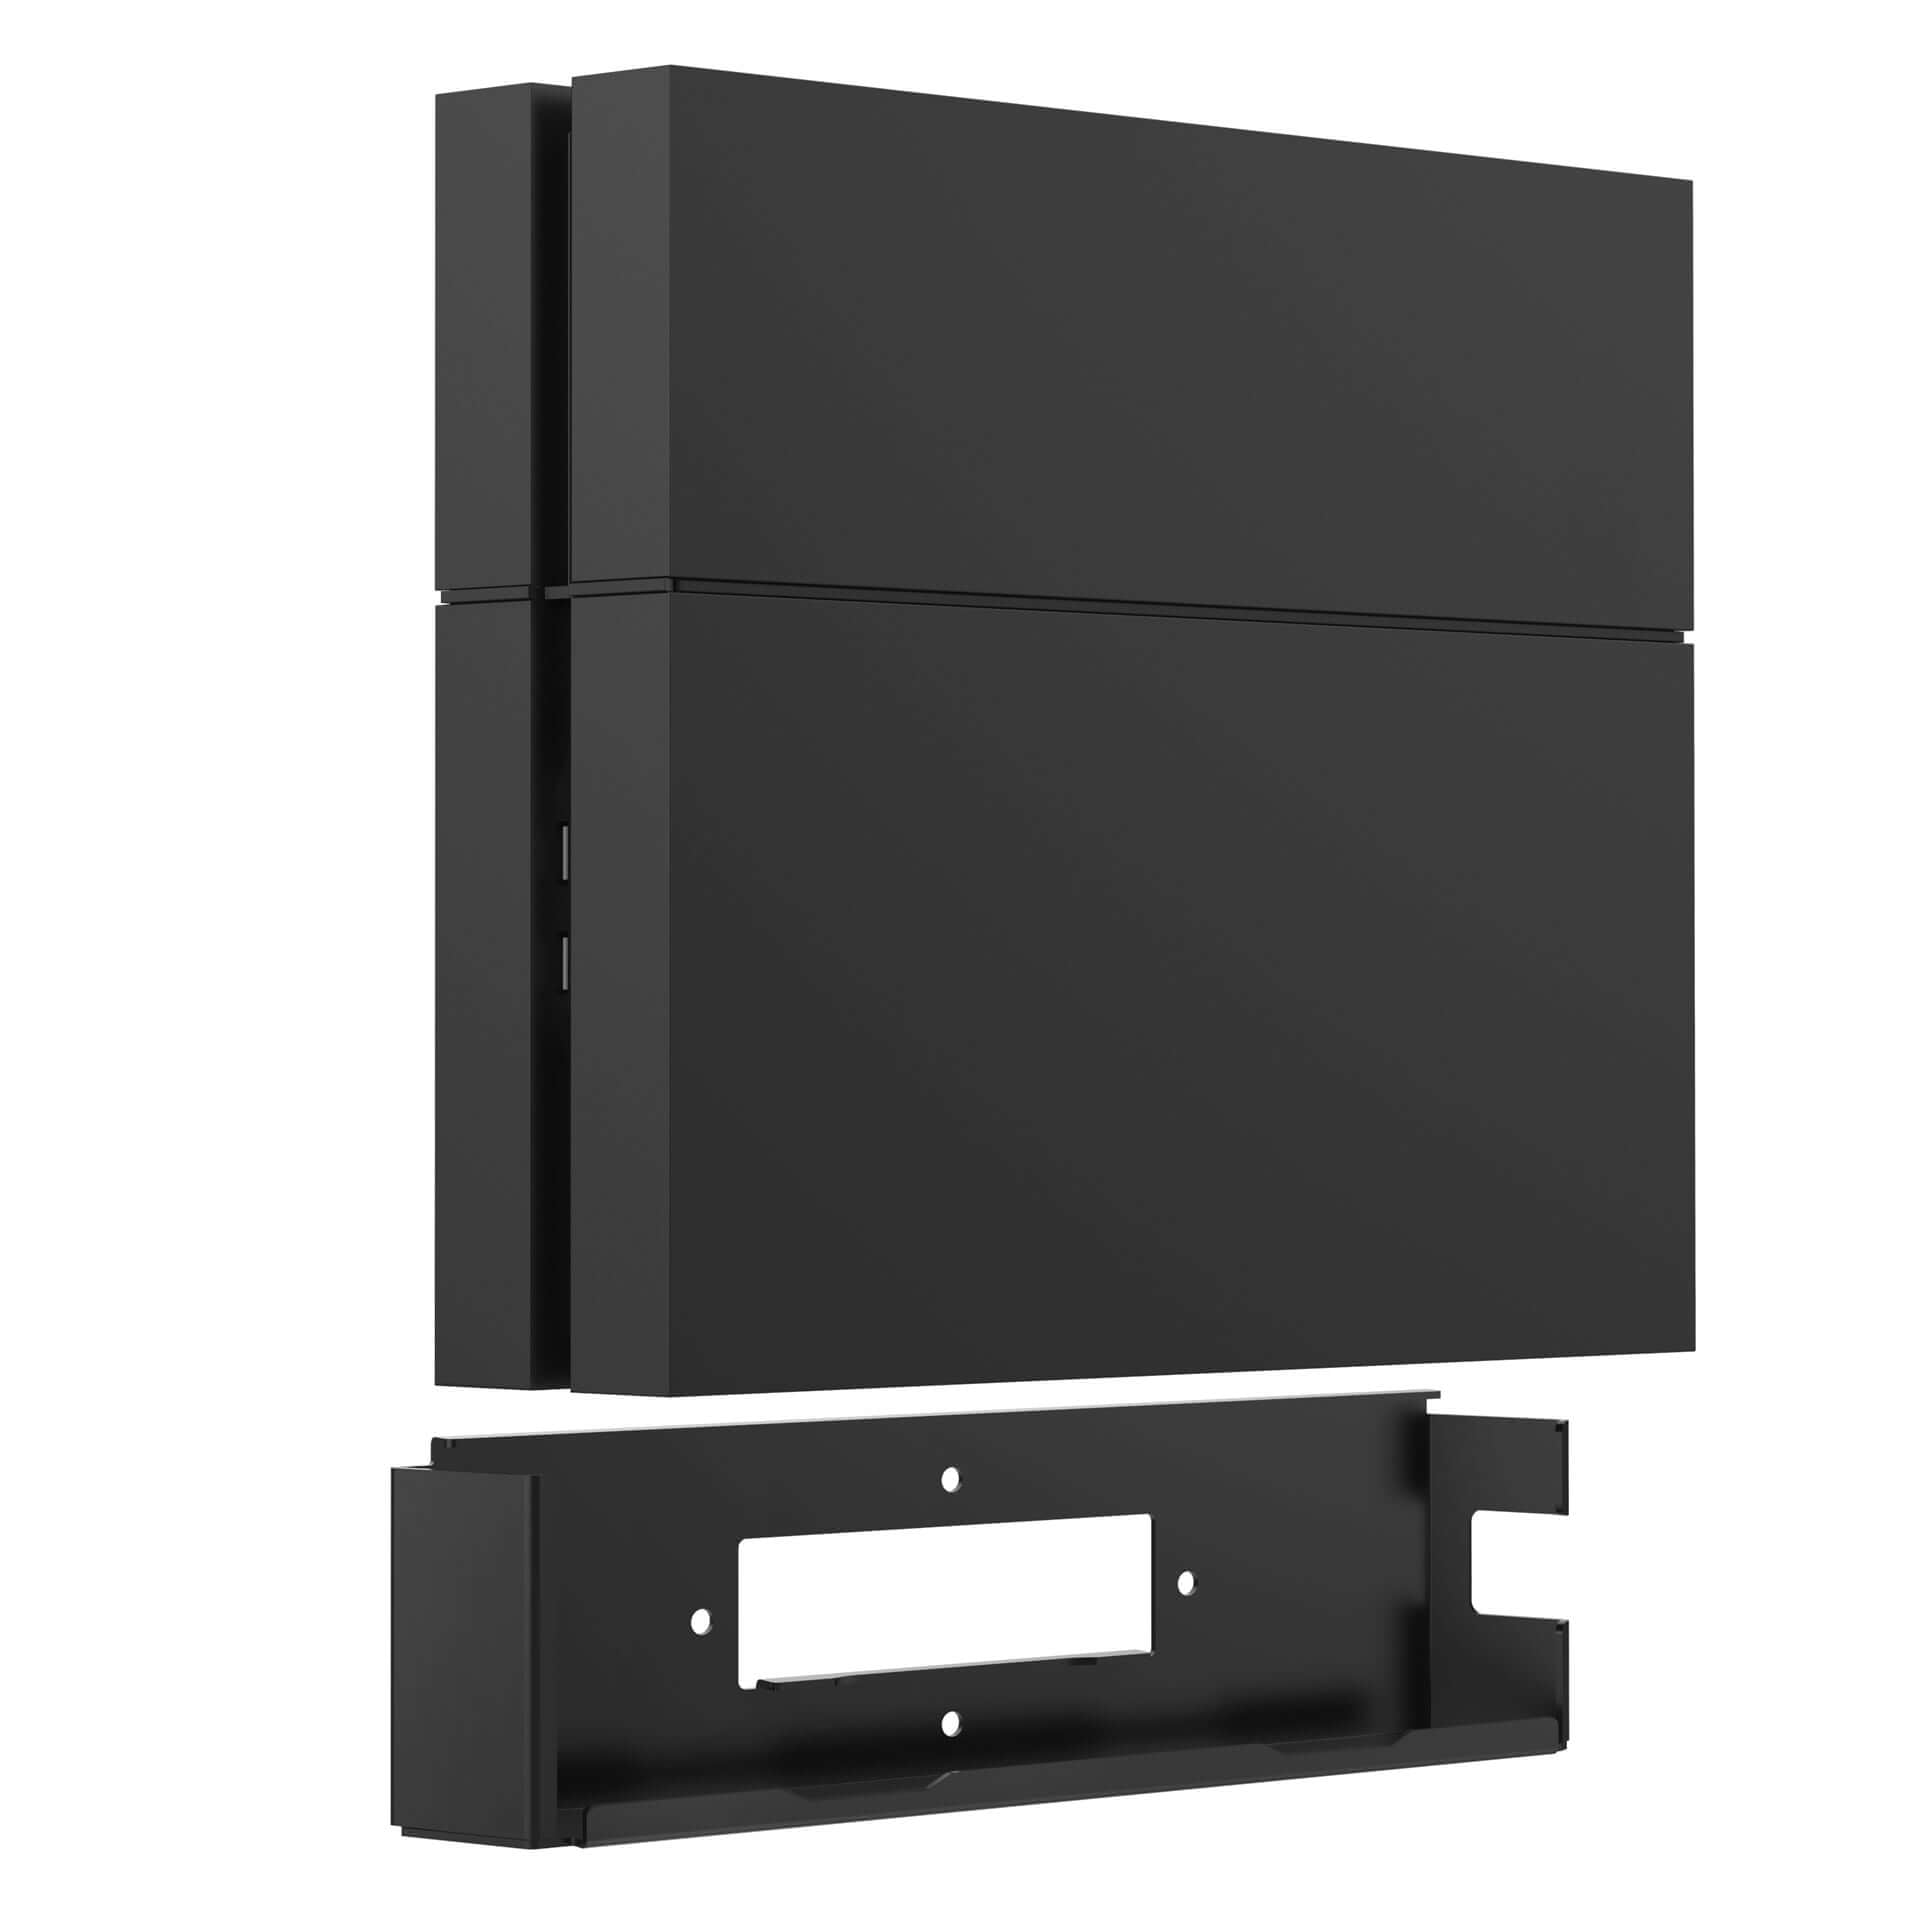 Monzlteck Nuevo soporte de pared para PS-4 Slim, cerca o detrás de TV,  ahorro de espacio, personalizado para adaptarse perfectamente a  PlayStation4